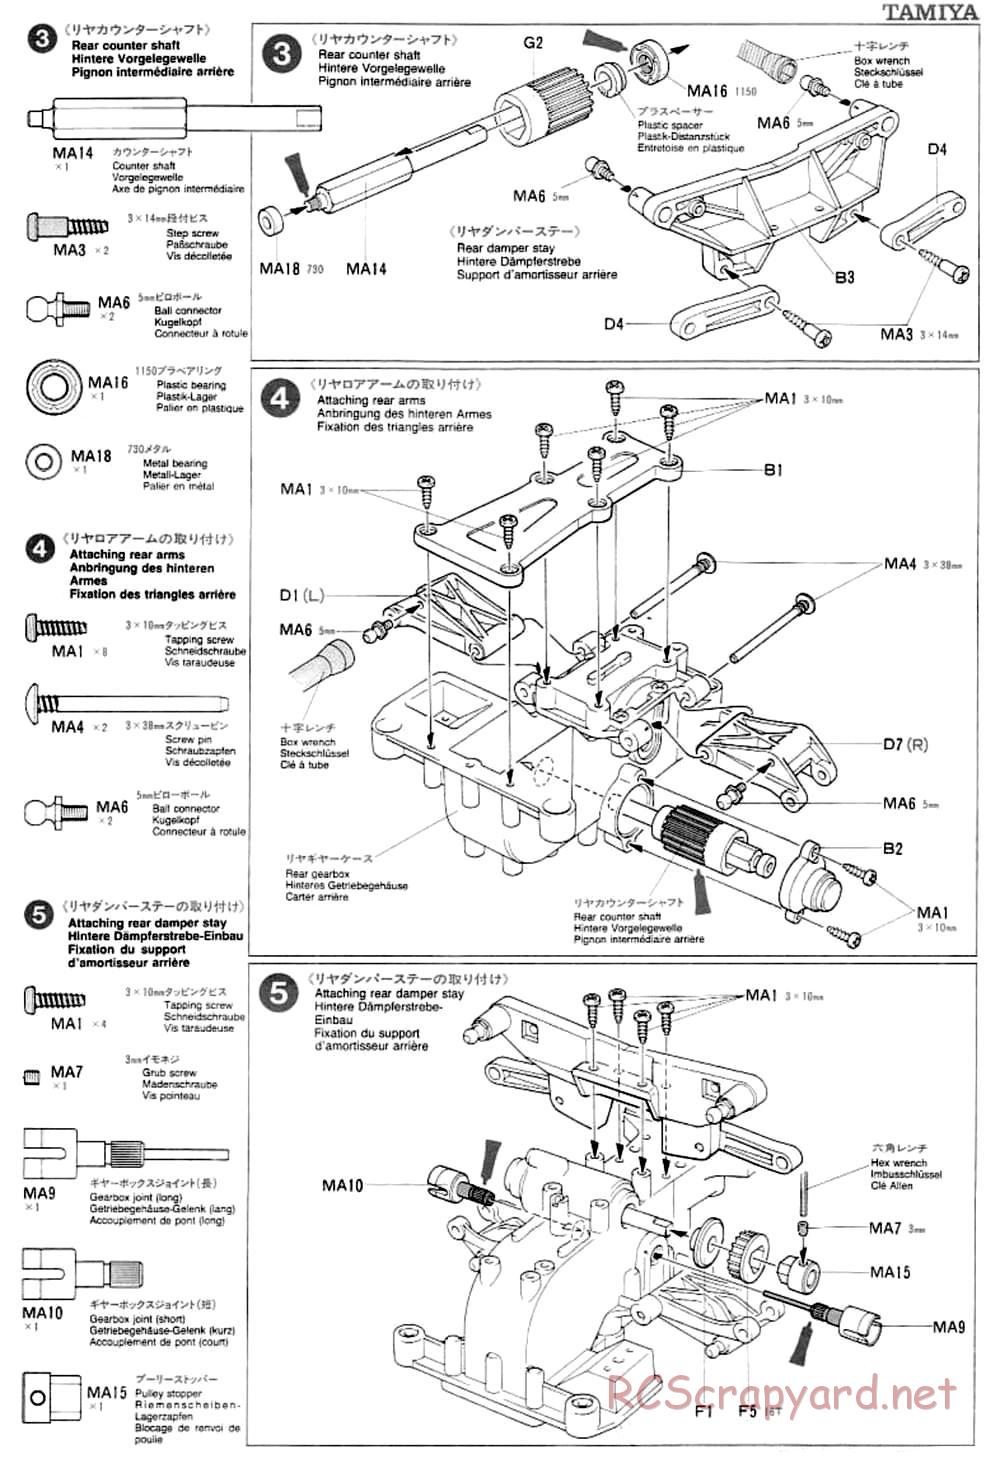 Tamiya - TA-03F Chassis - Manual - Page 5